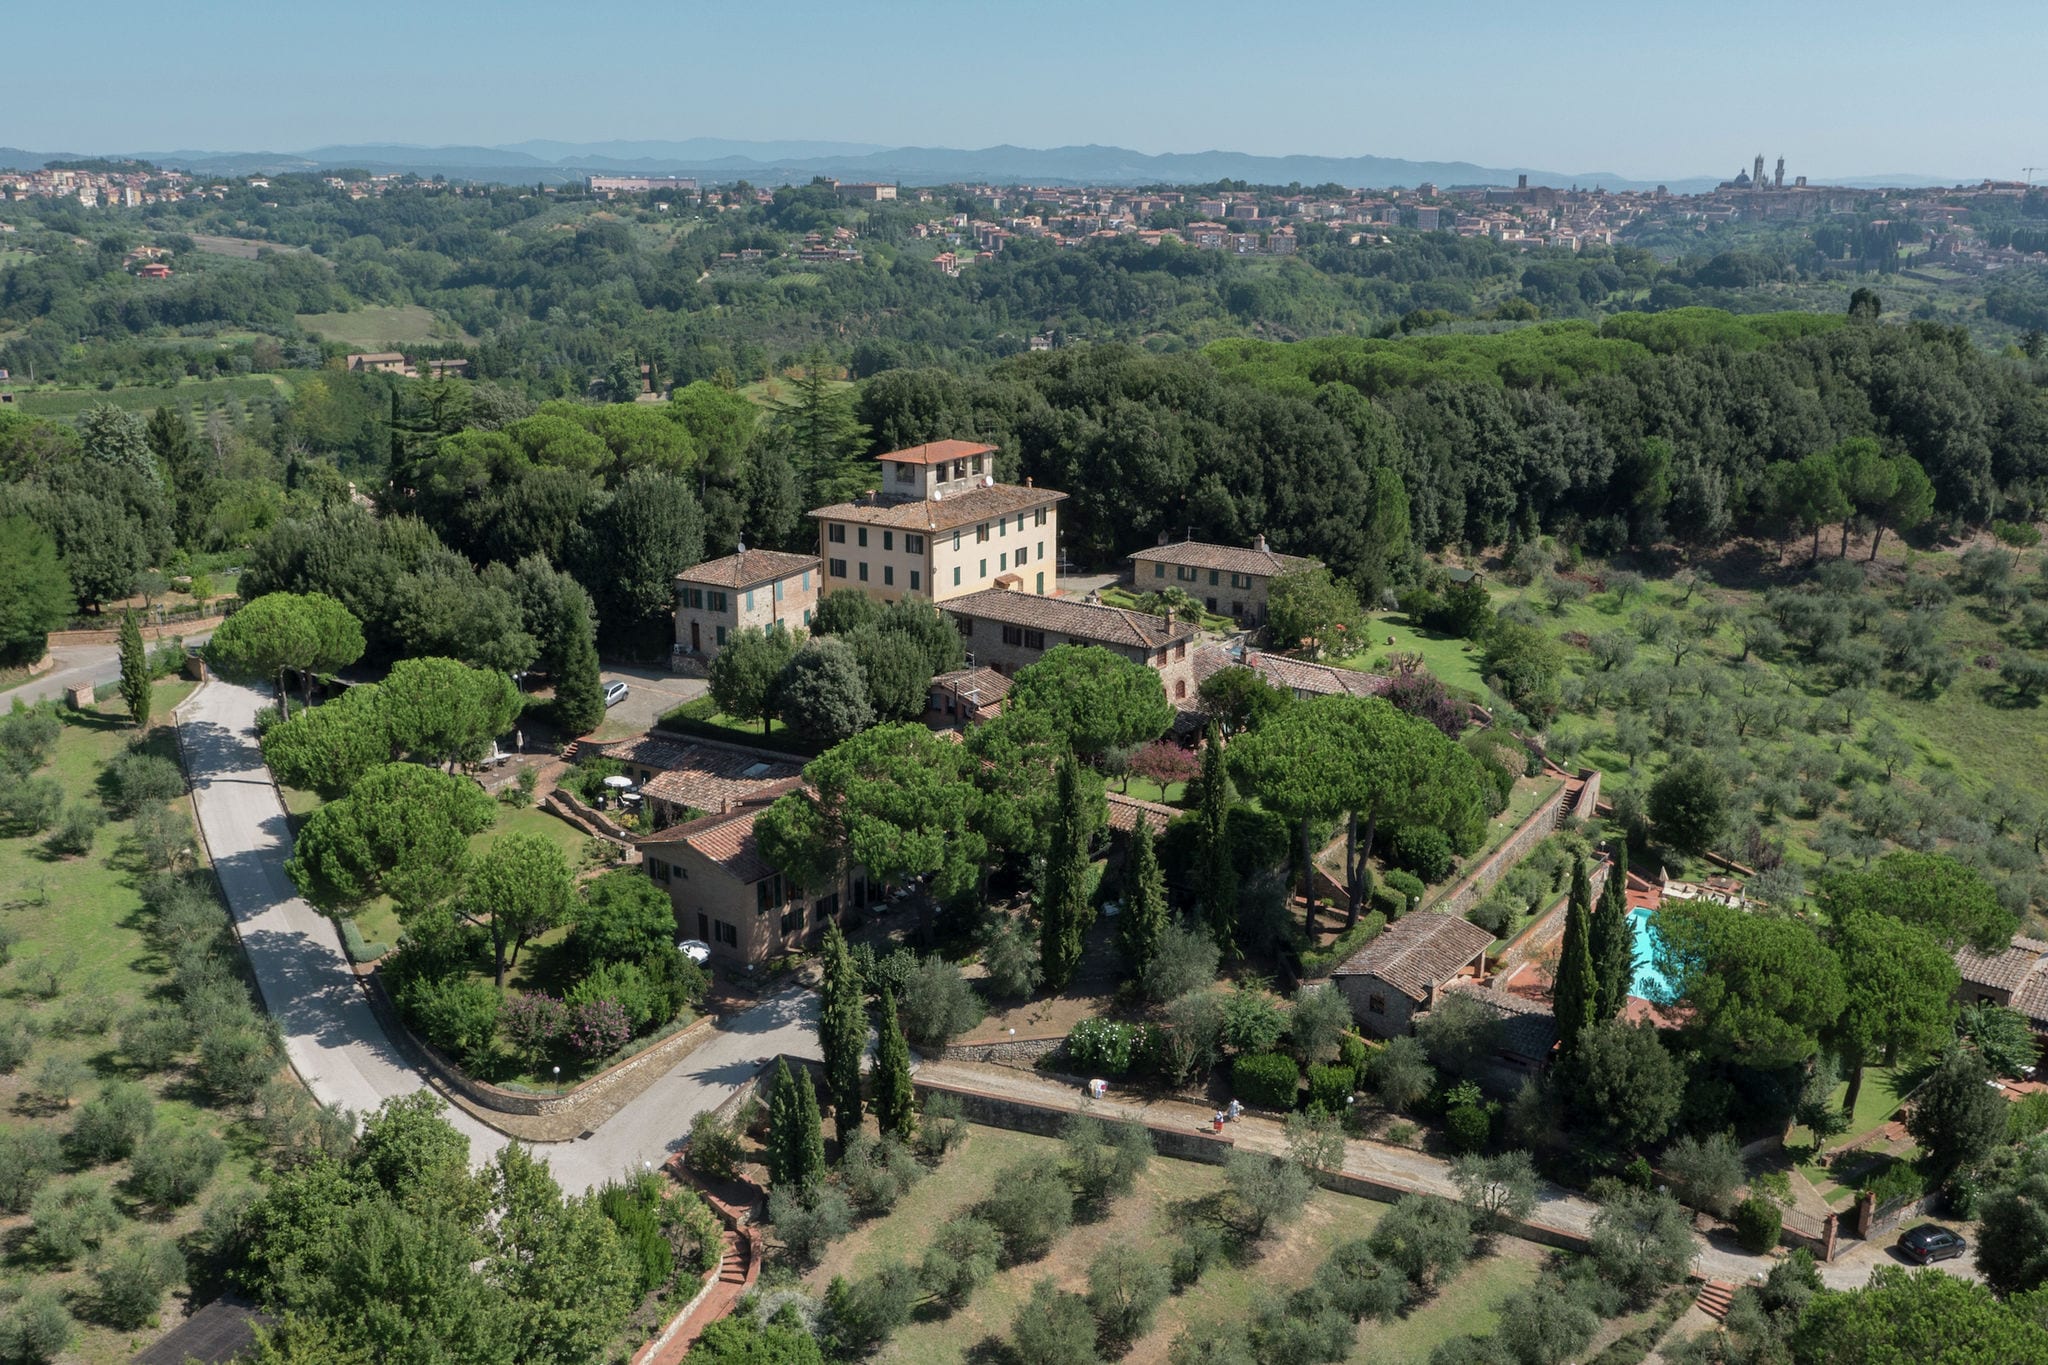 Vakantiehuis op 5 km van Siena in de heuvels, zwembad en tuin